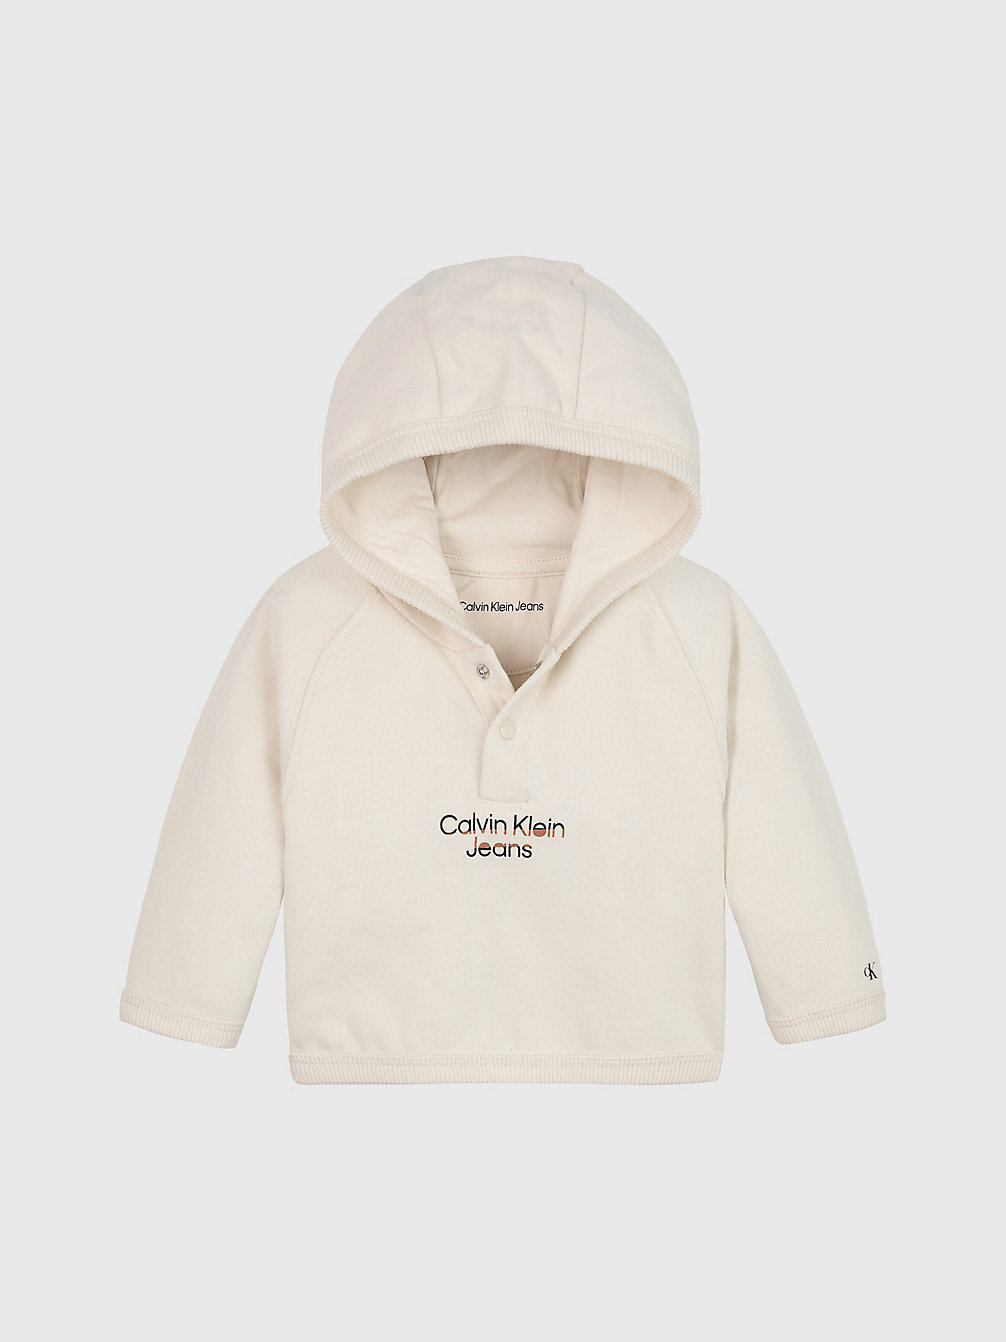 WHITECAP GRAY Baby-Logo-Hoodie Aus Fleece undefined newborn Calvin Klein